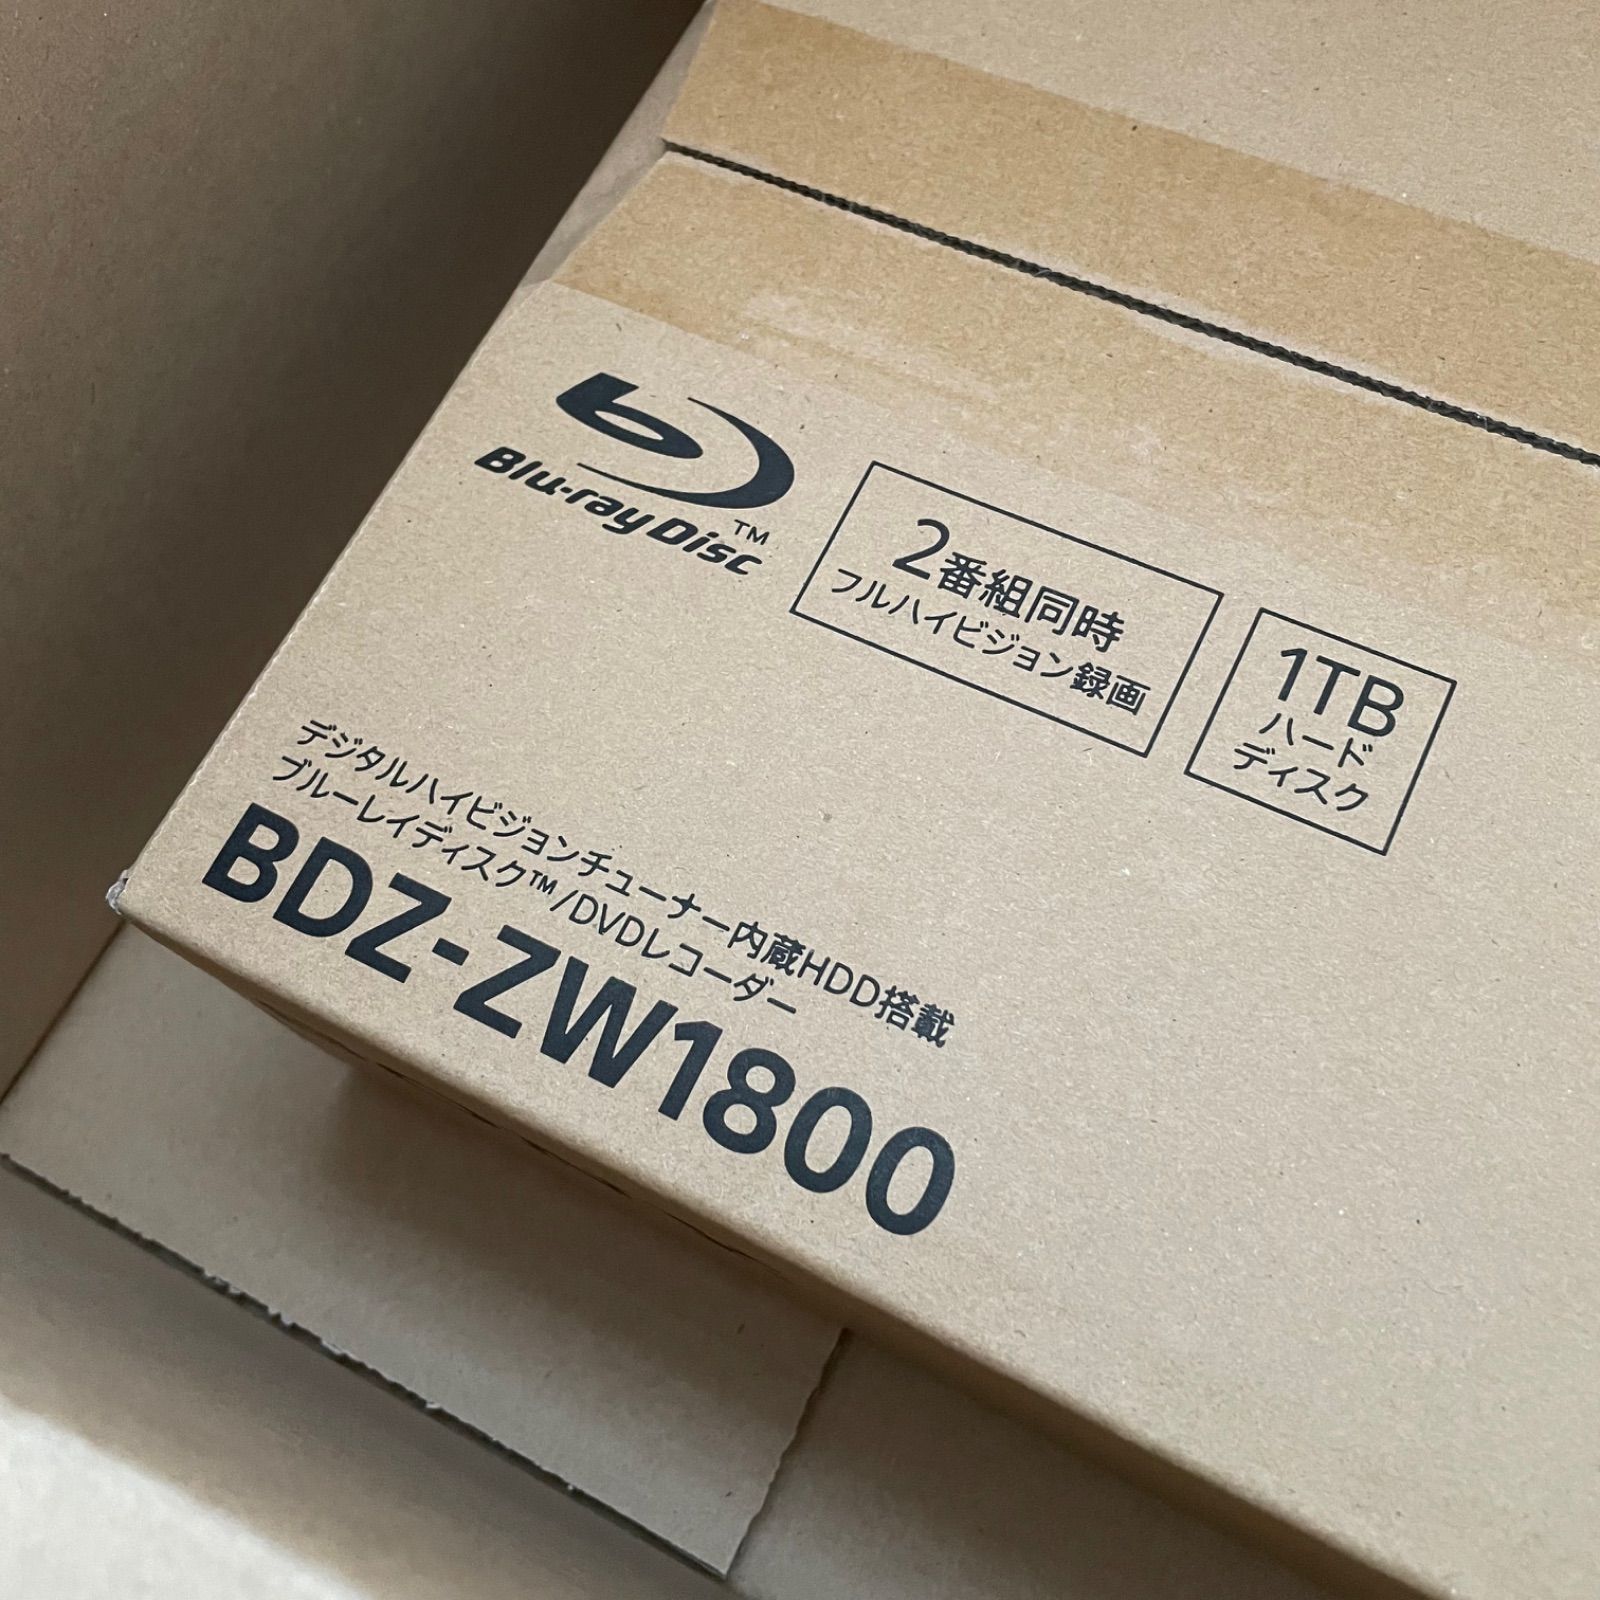 ソニー 1TB 2チューナー ブルーレイレコーダー BDZ-ZW1800 未使用